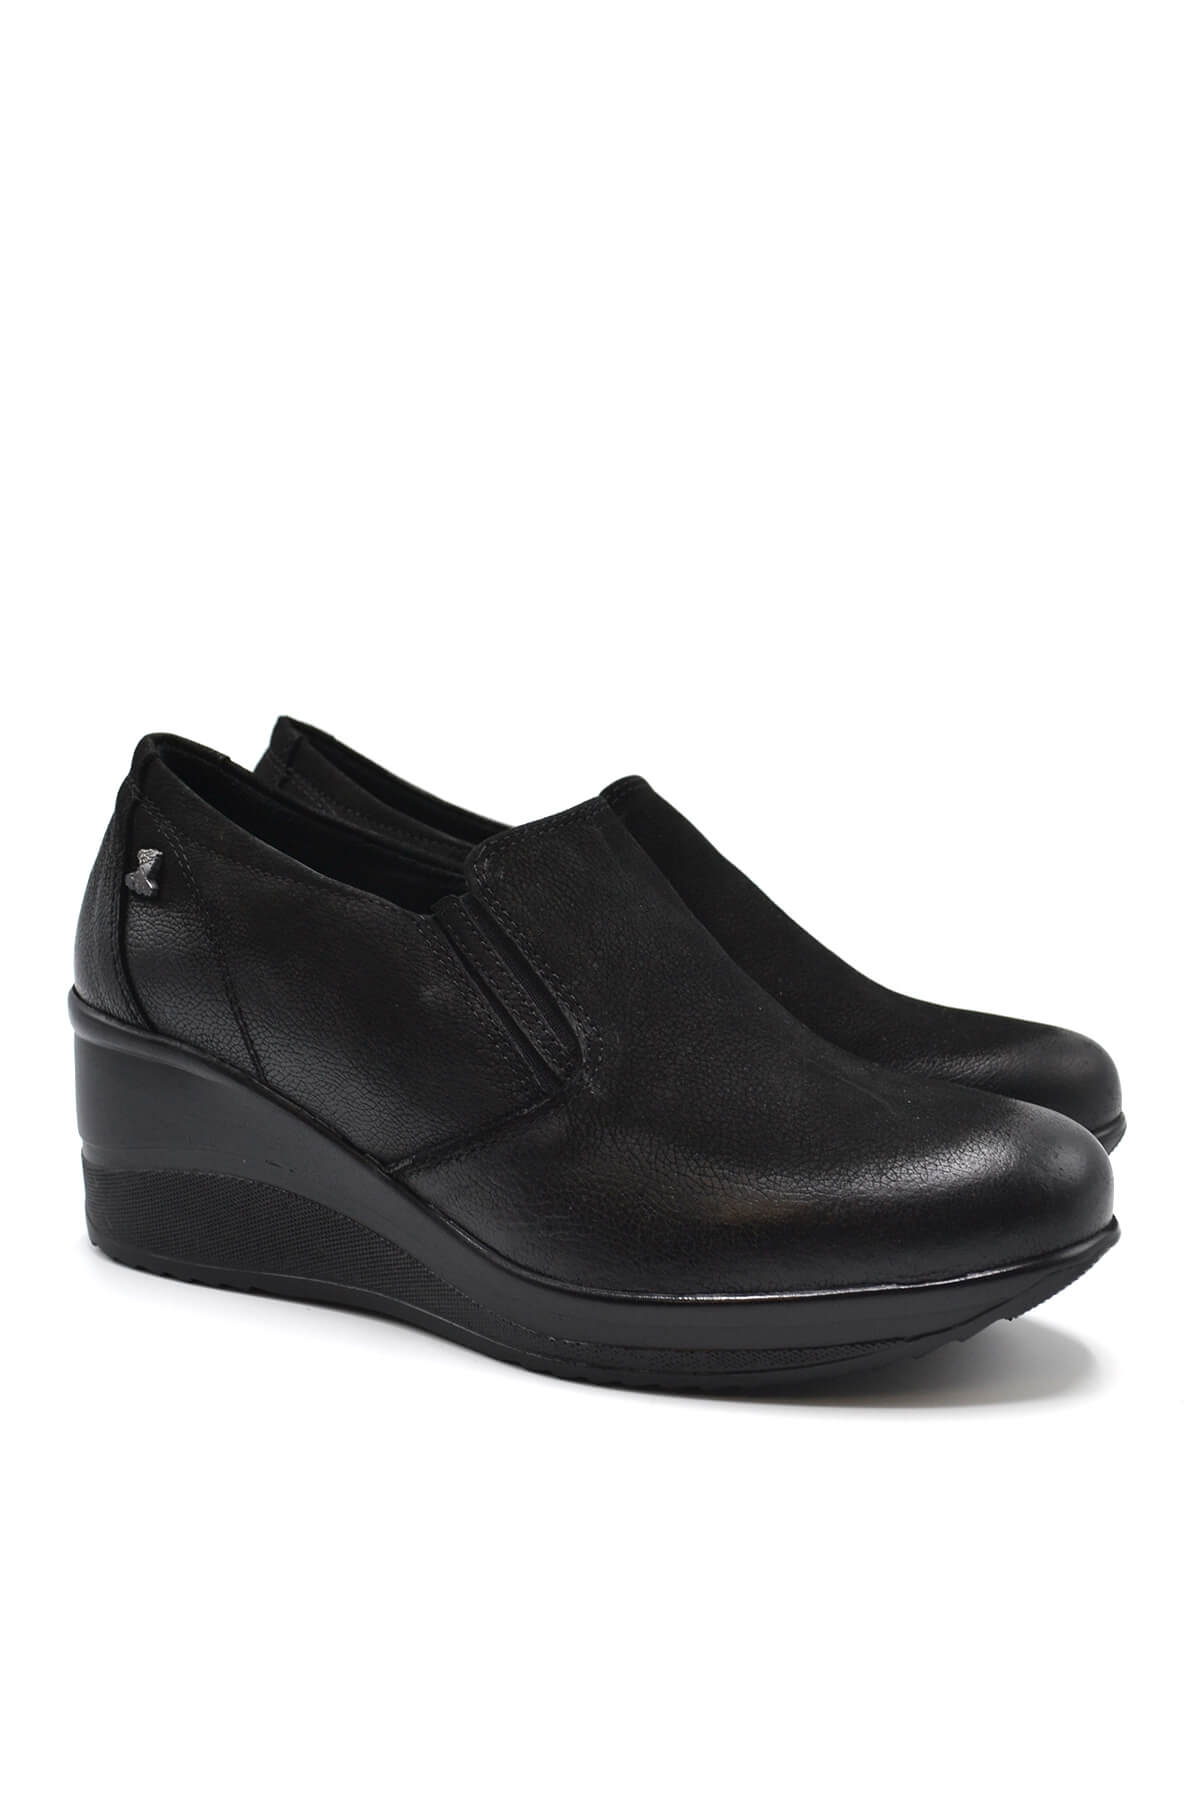 Kadın Dolgu Topuk Deri Ayakkabı Siyah 2111501K - Thumbnail